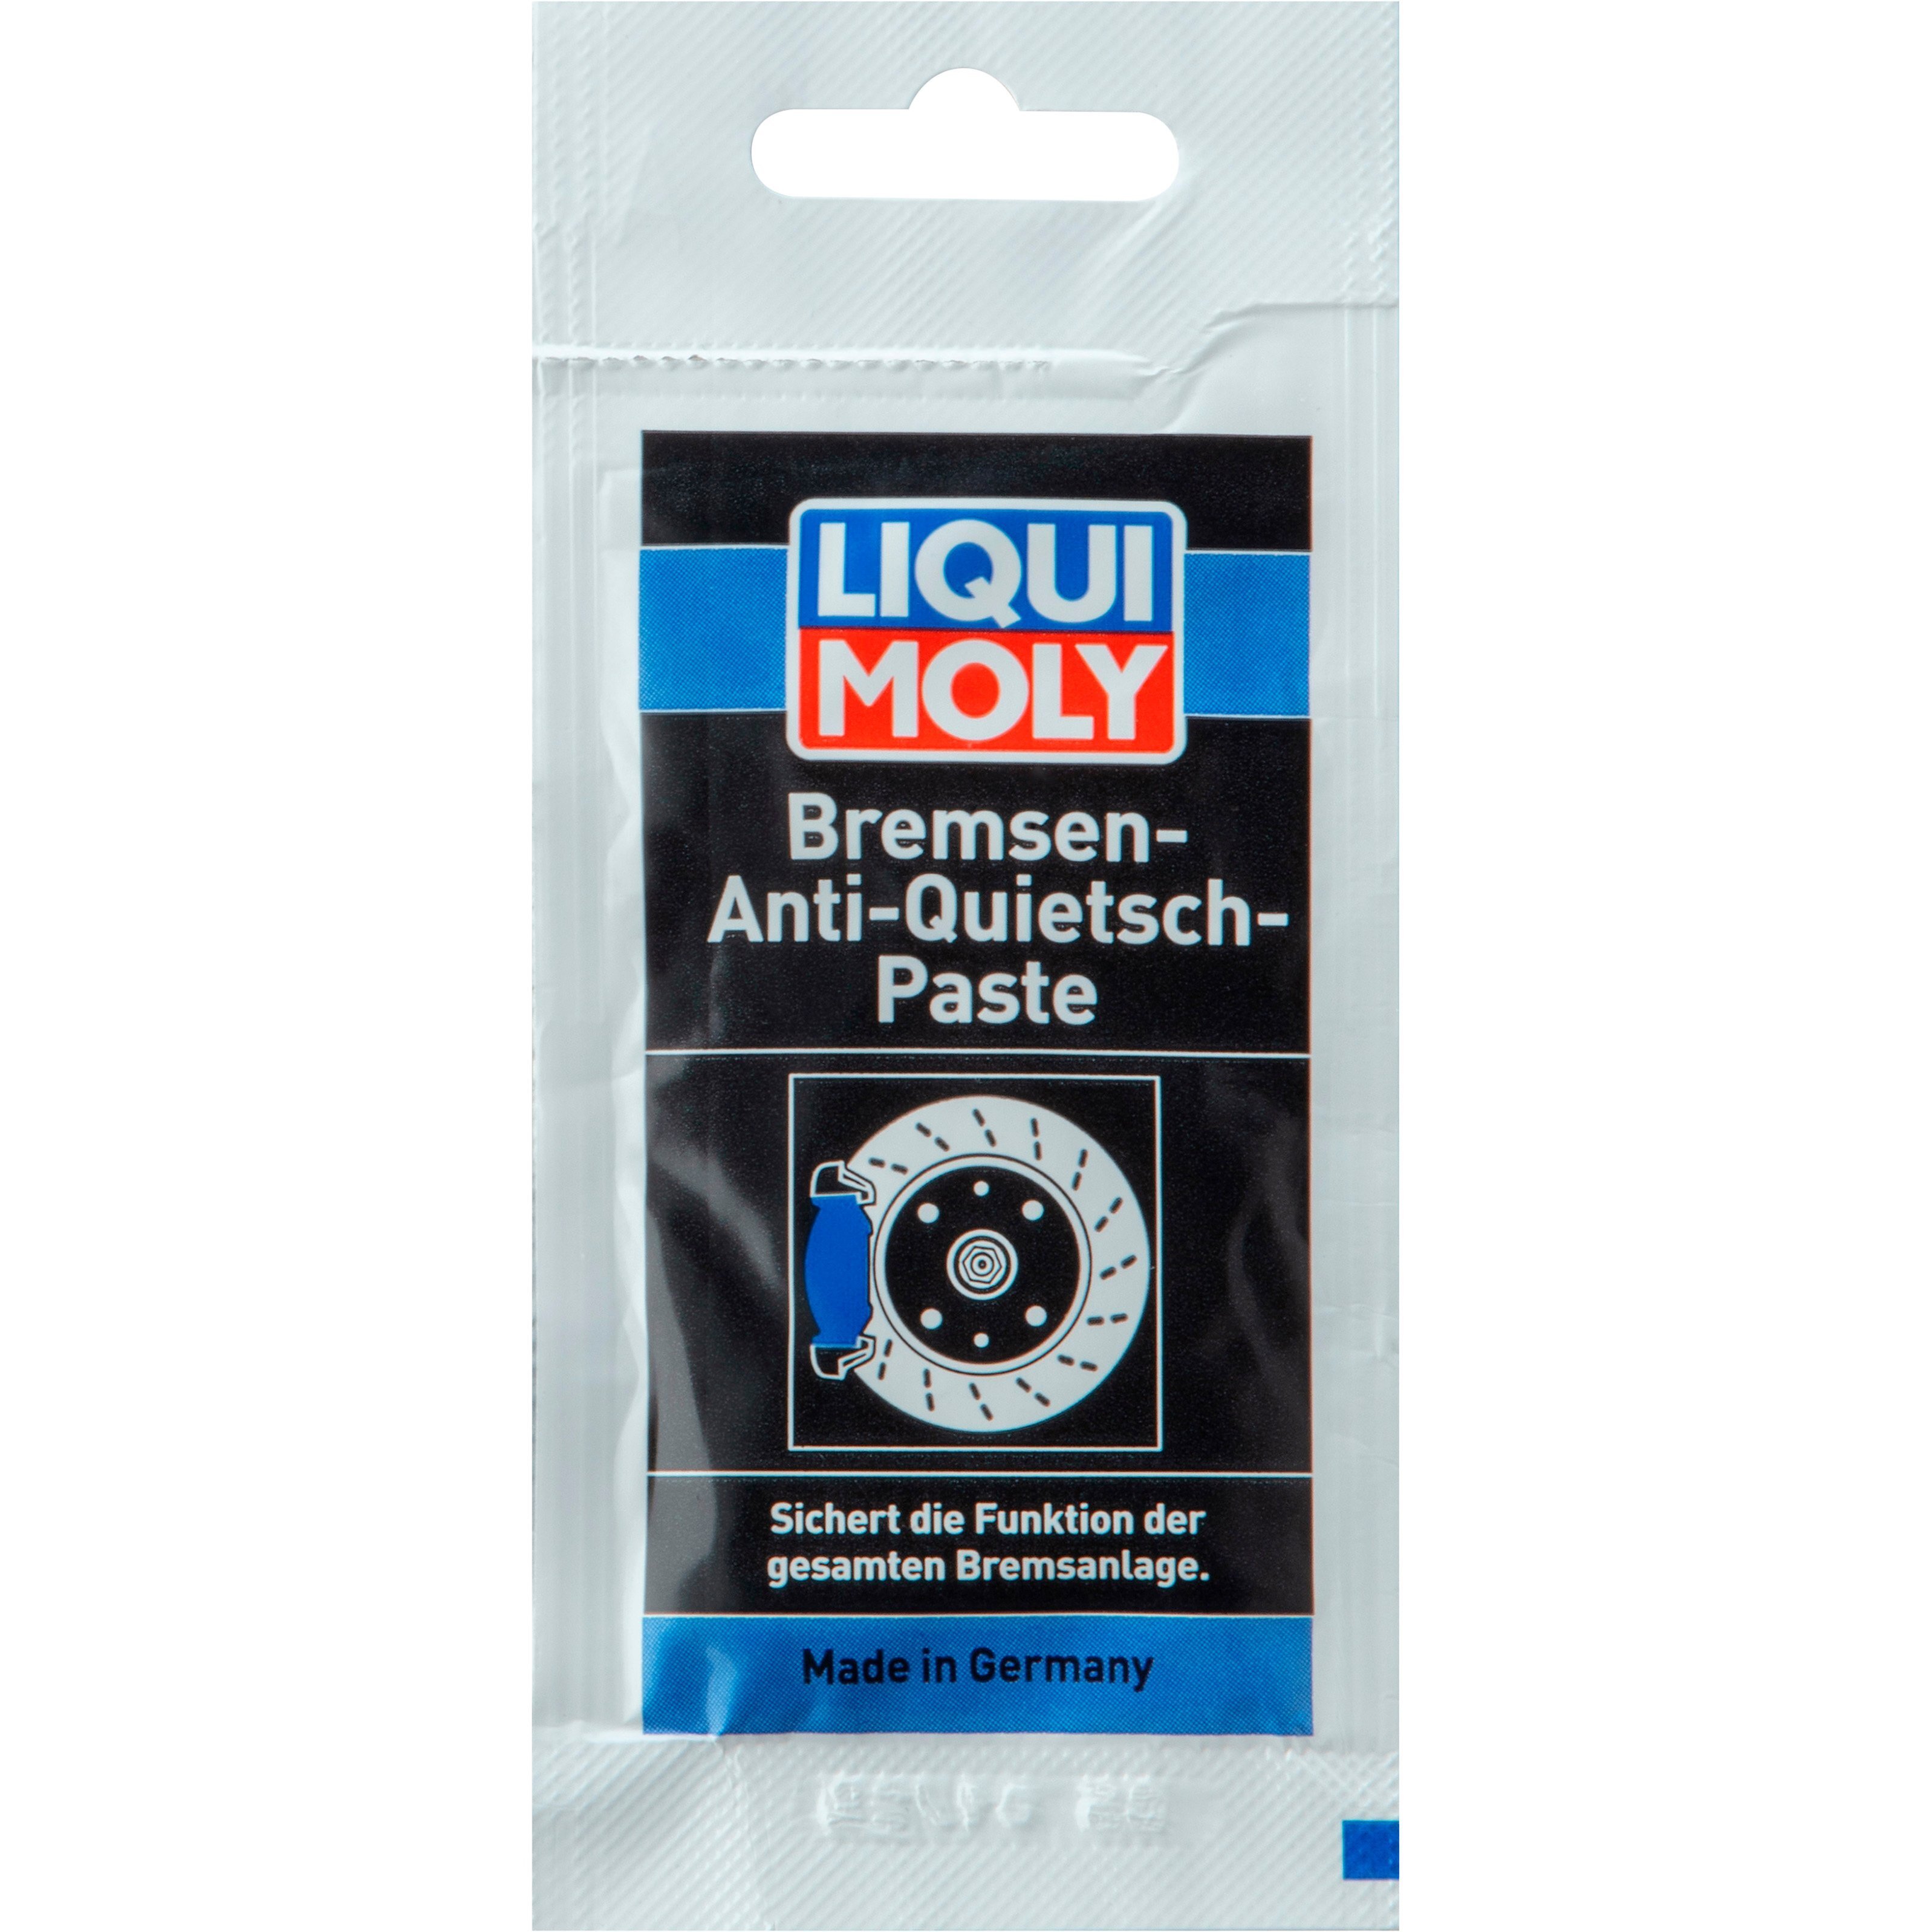 Масло Liqui Moly синтетическое для тормозной системы Bremsen-Anti-Quietsch-Paste 0,01кг (4100420075858) фото 1